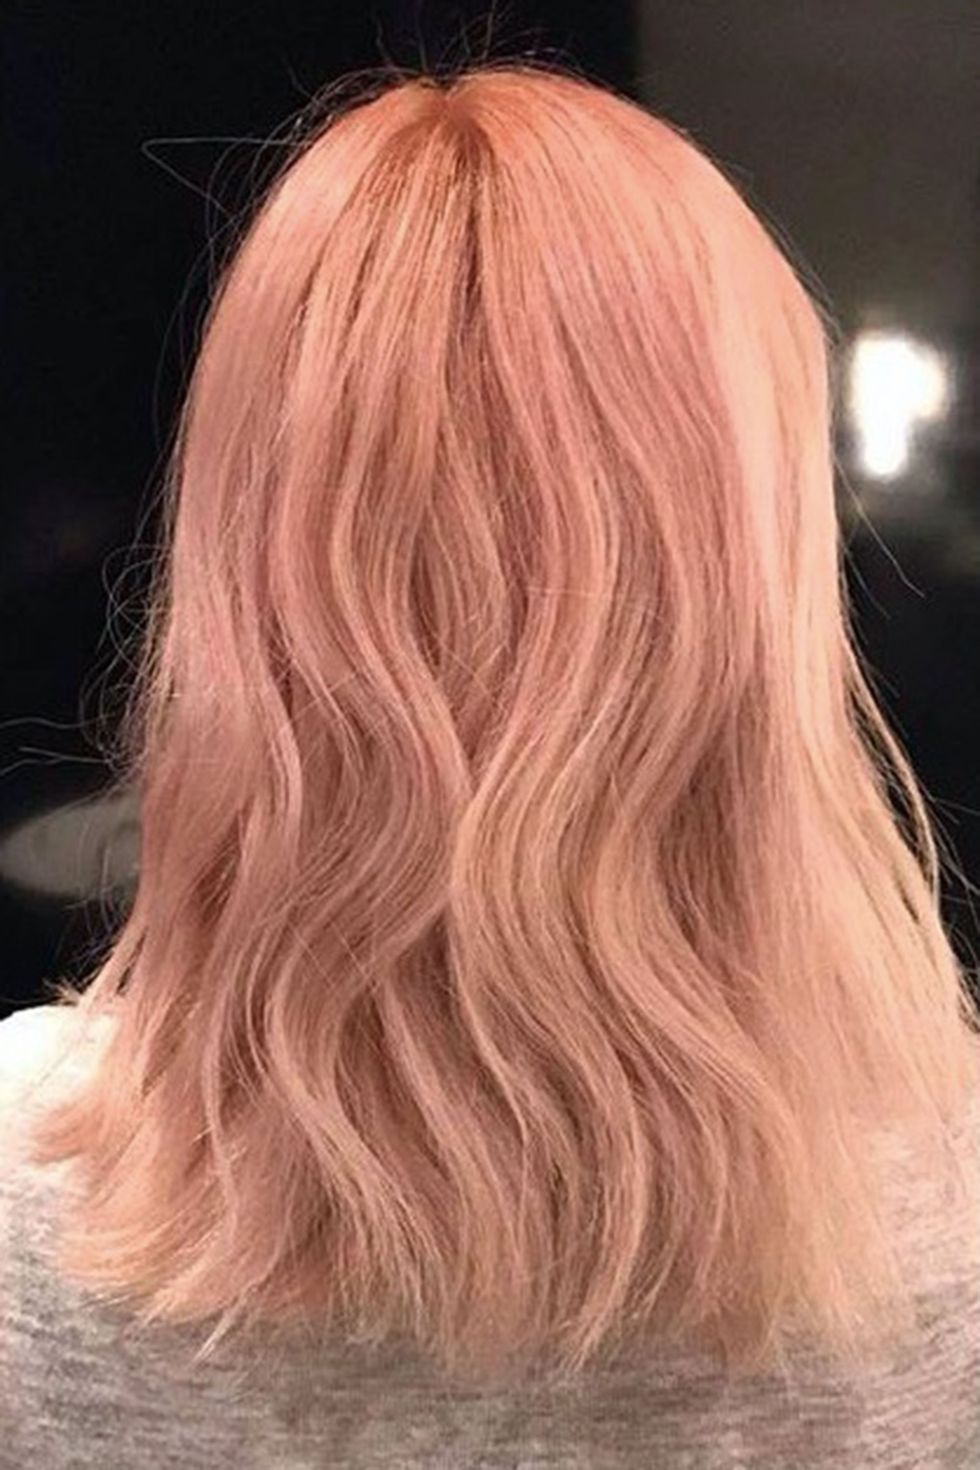 Peach blonde hair